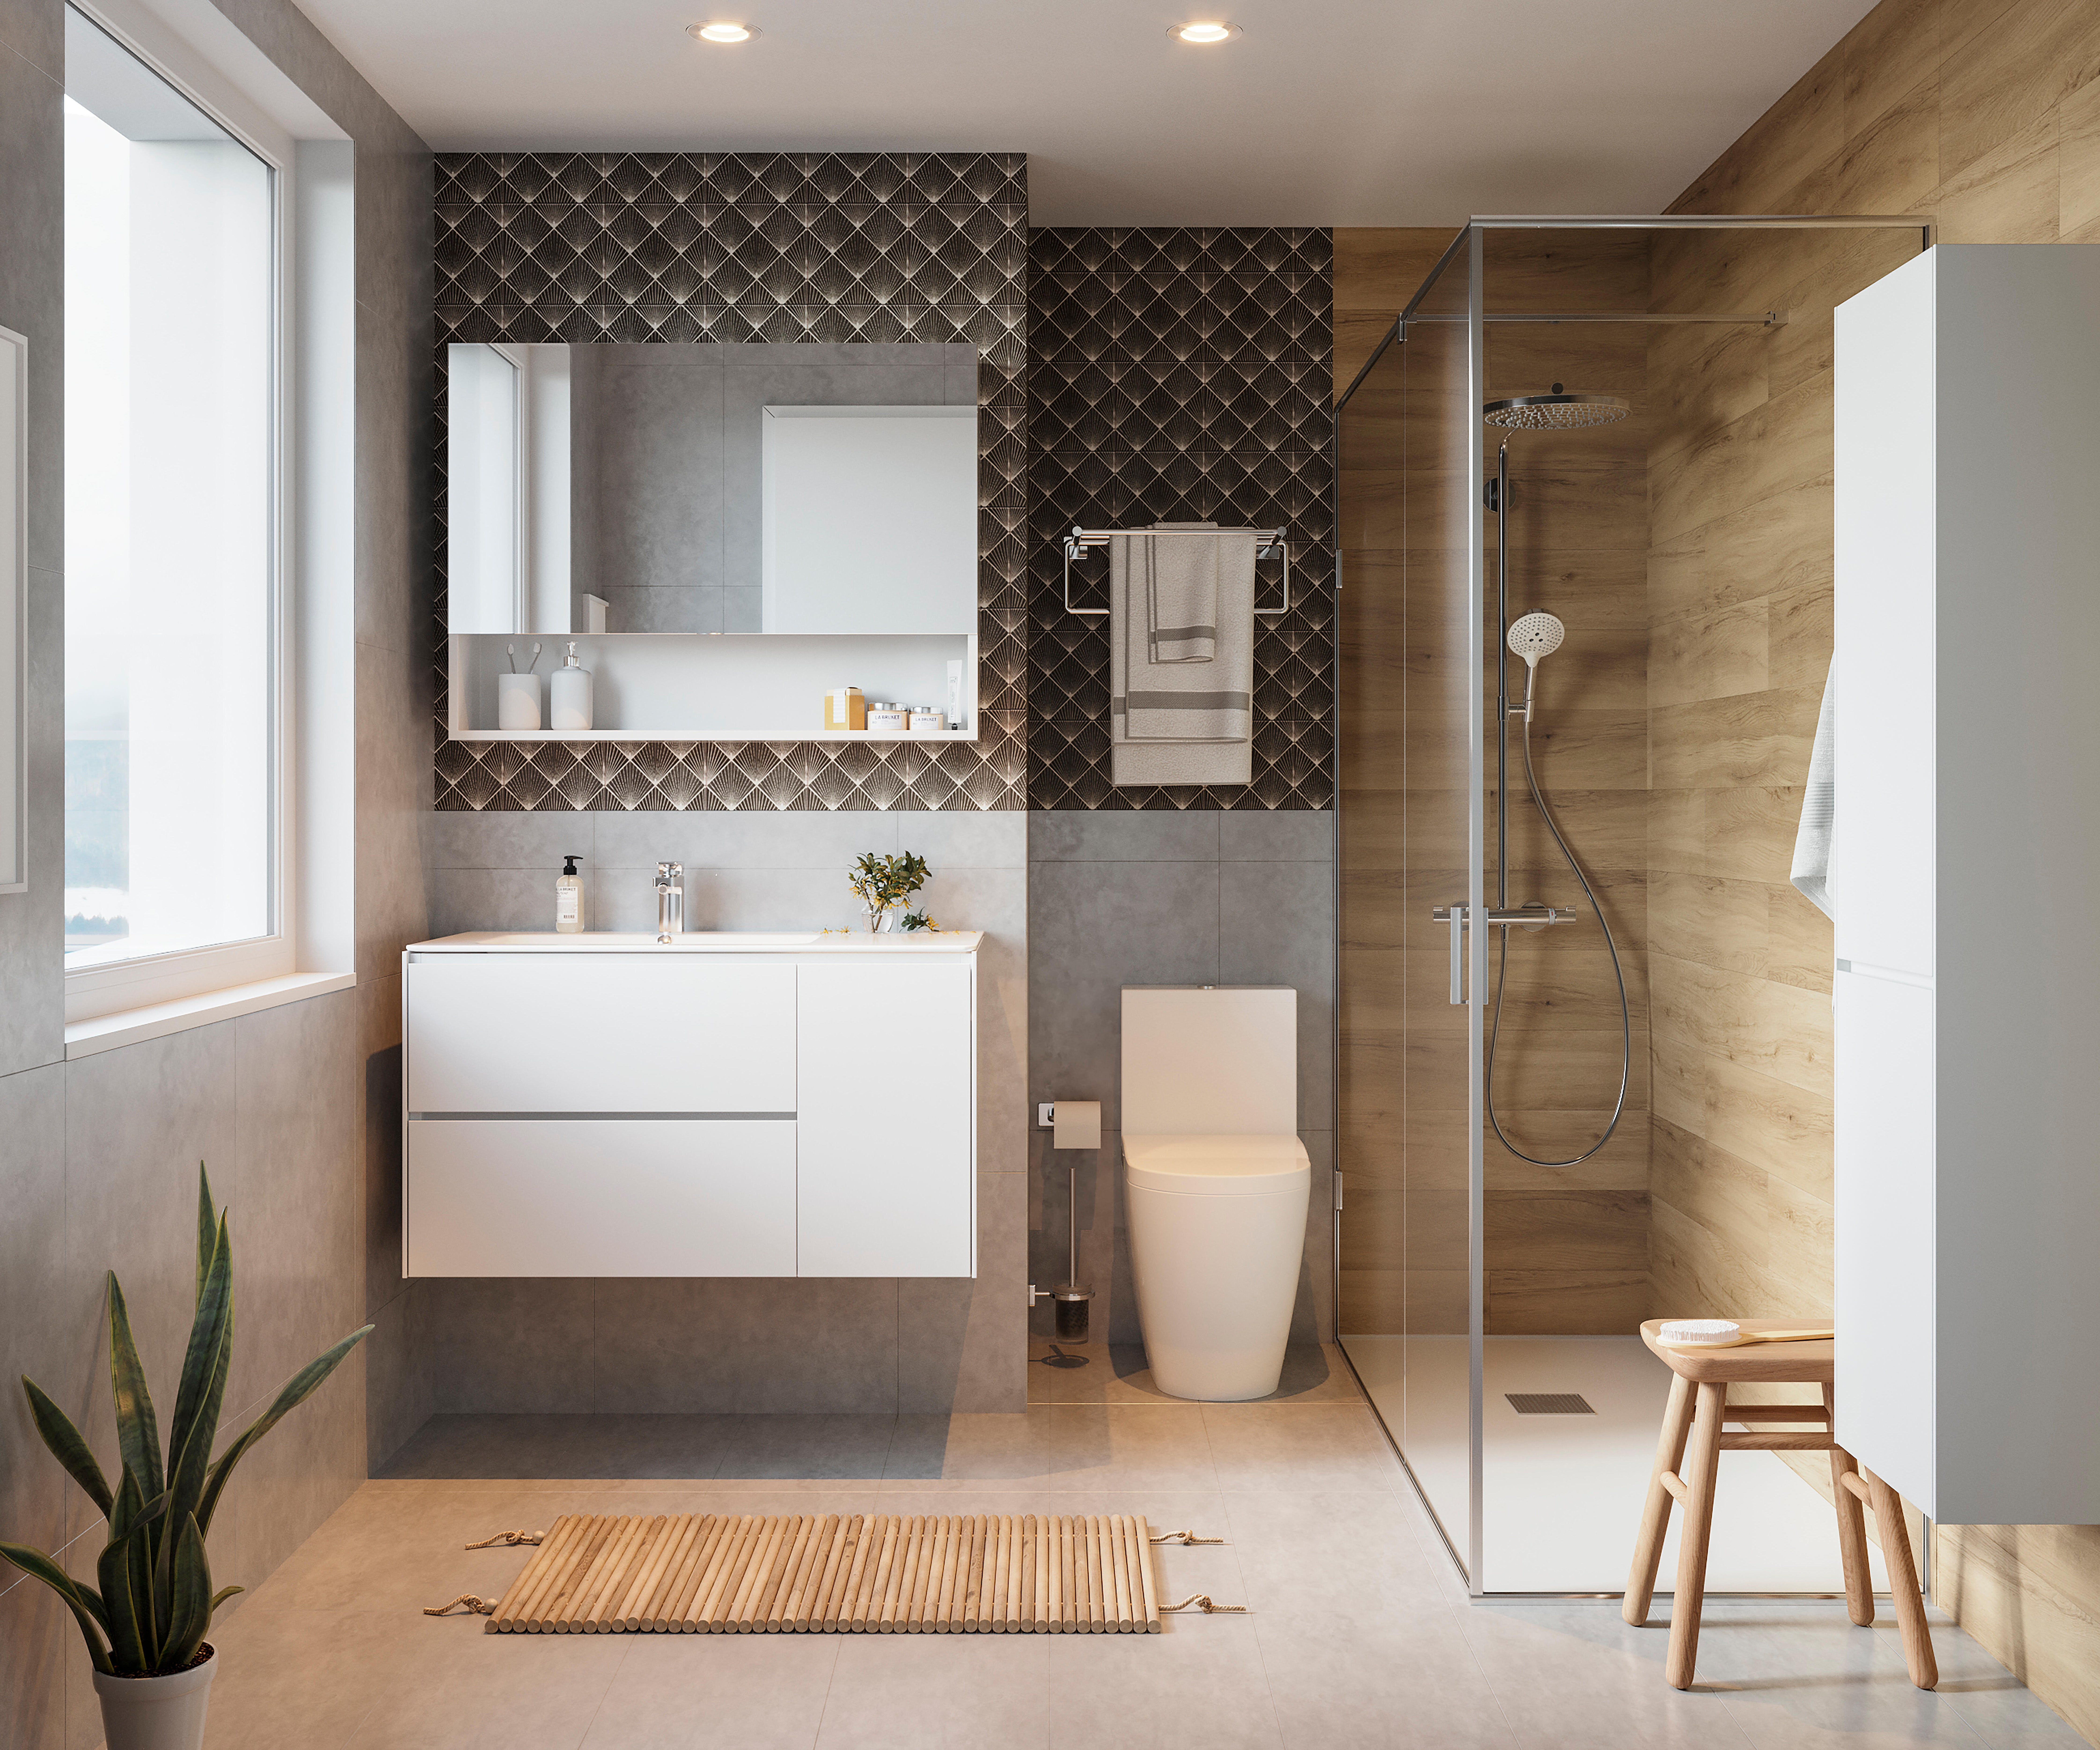 Reforma en el baño sin obras: 5 azulejos adhesivos de Leroy Merlin para un  baño de revista a partir de 20 €